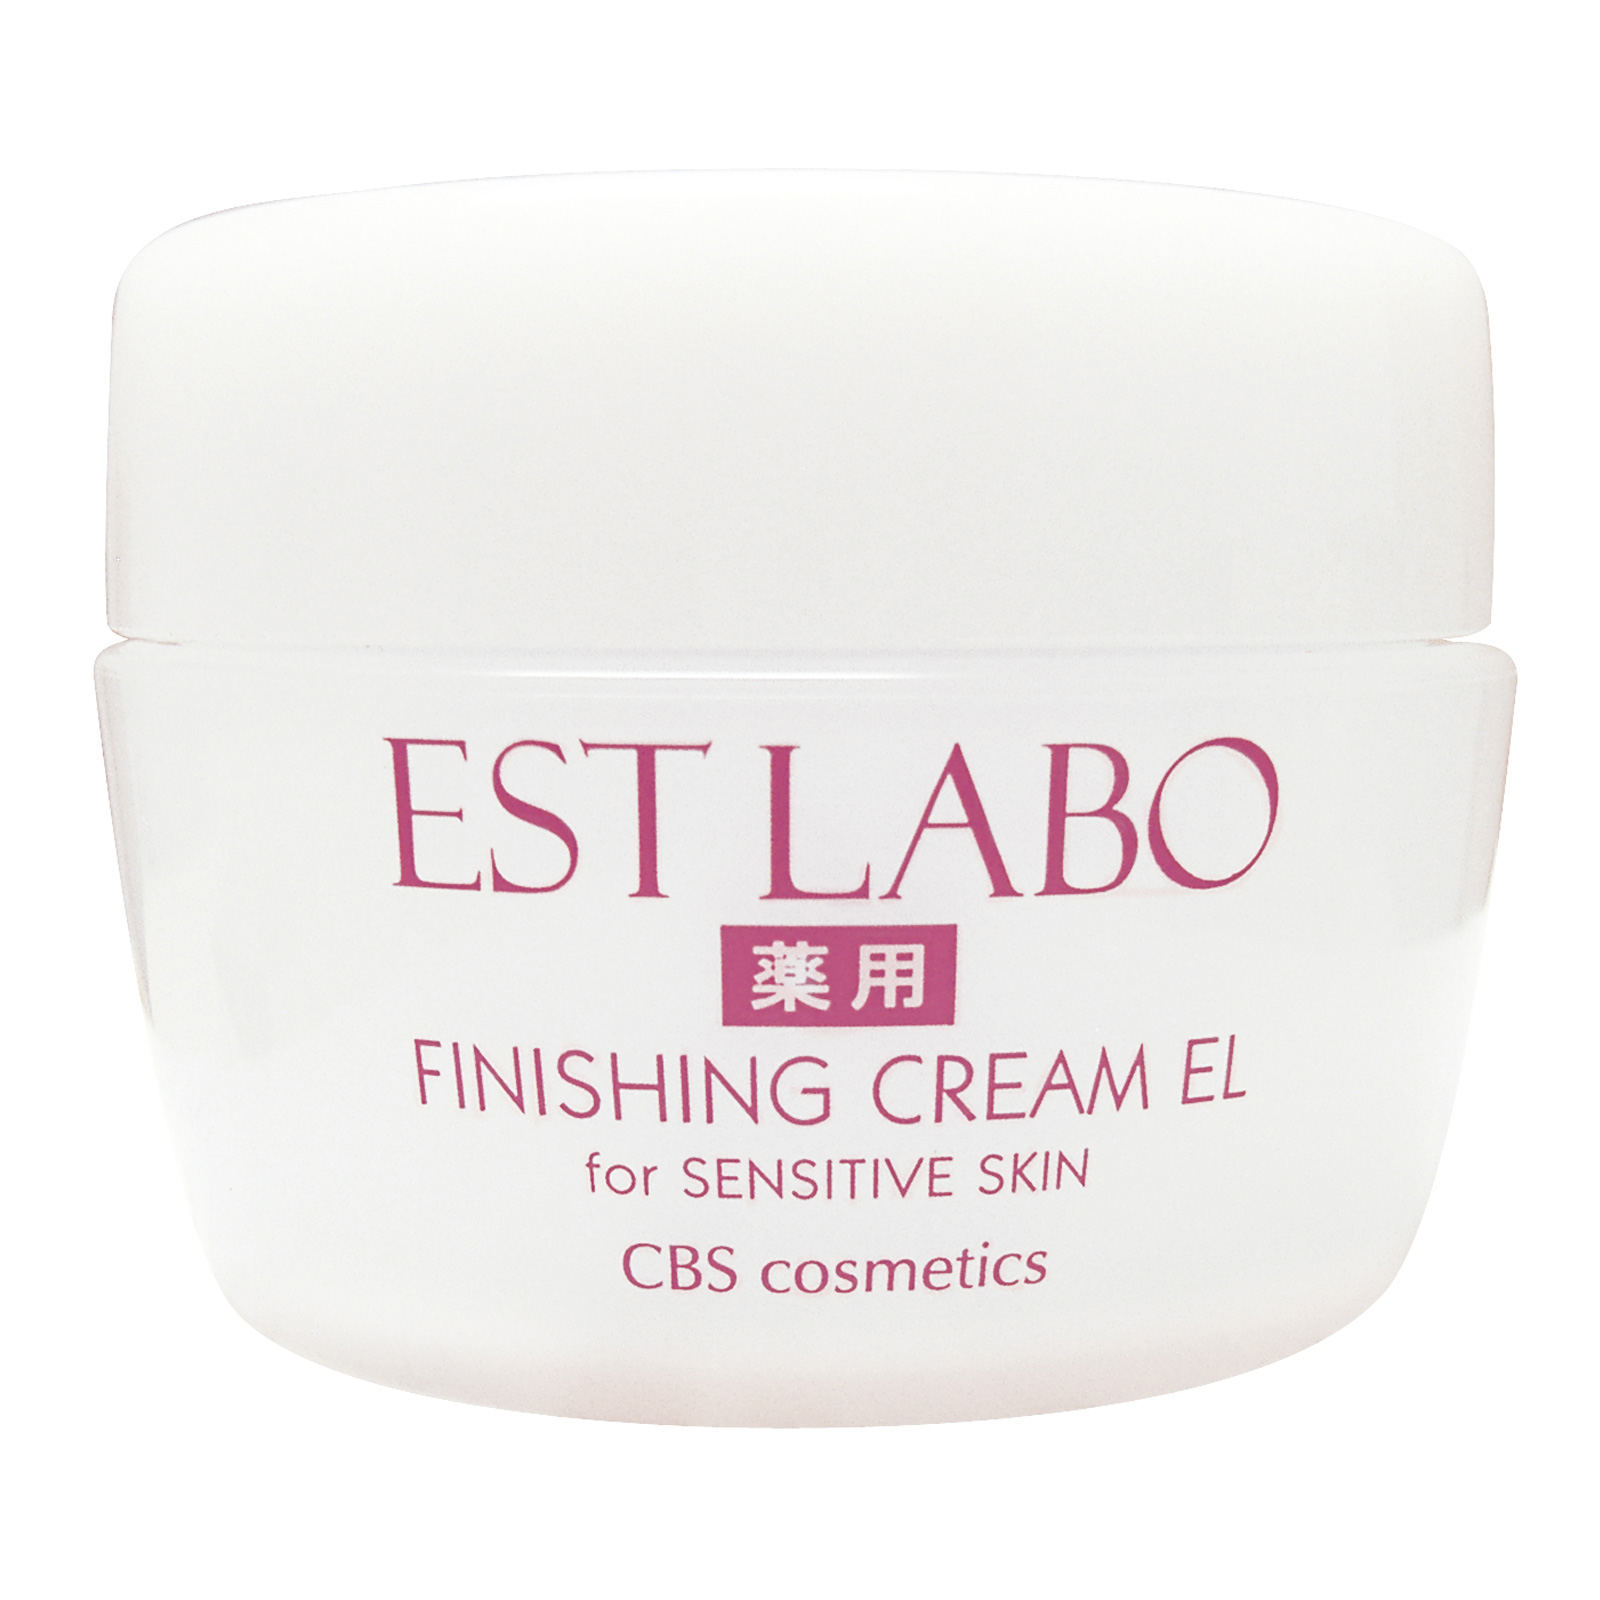 CBS Cosmetics EST LABO Finishing Cream EL. Питательный крем для лица Эст Лабо Эль, 45 г